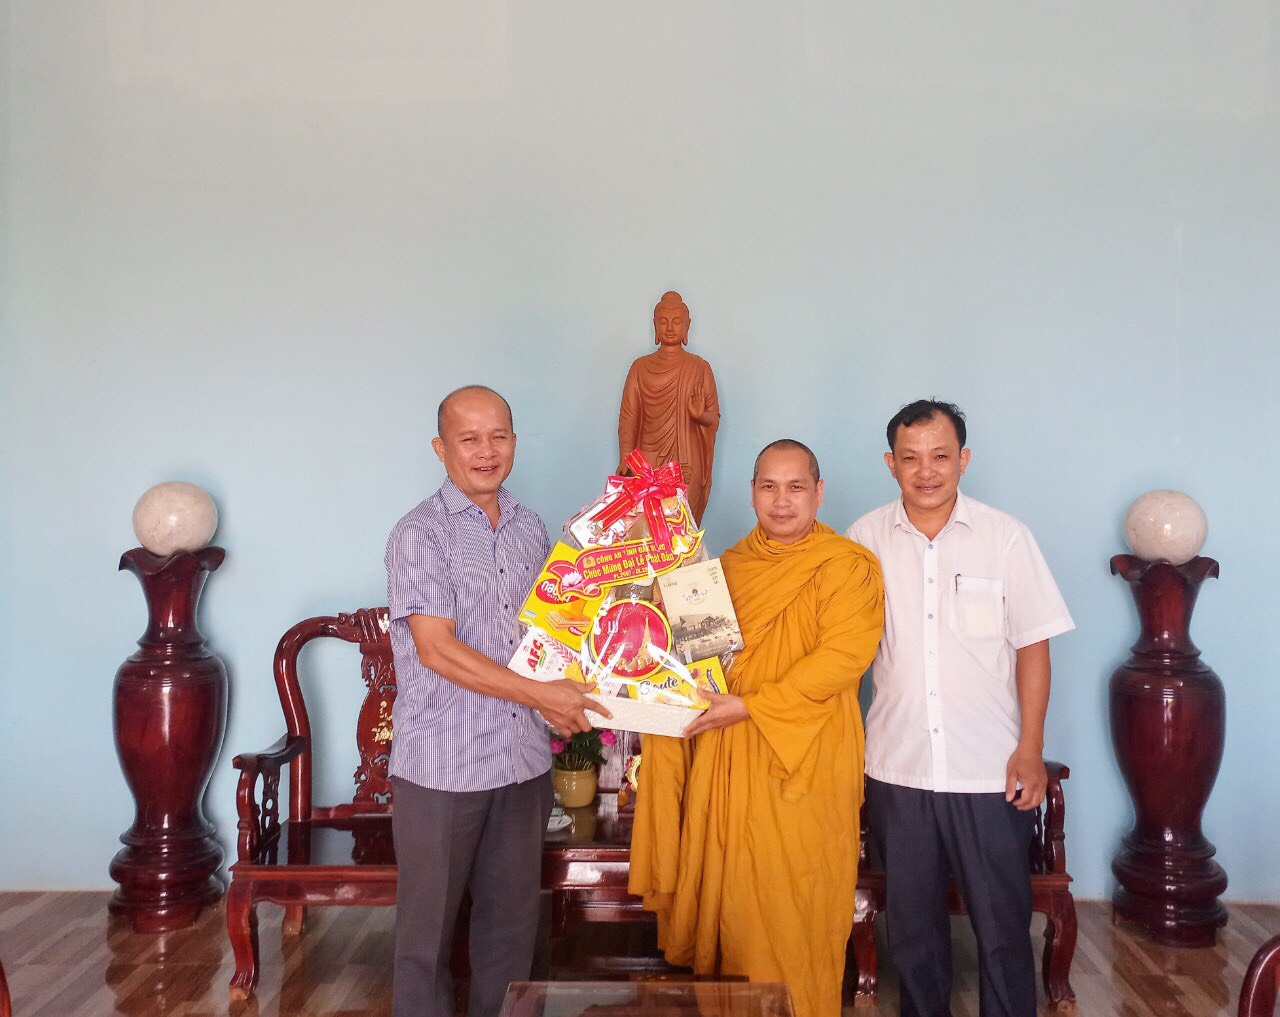 Lãnh đạo Công an tỉnh Đắk Nông chúc mừng Đại lễ Phật đản PL. 2567 đến Tịnh xá Ngọc Đạt 